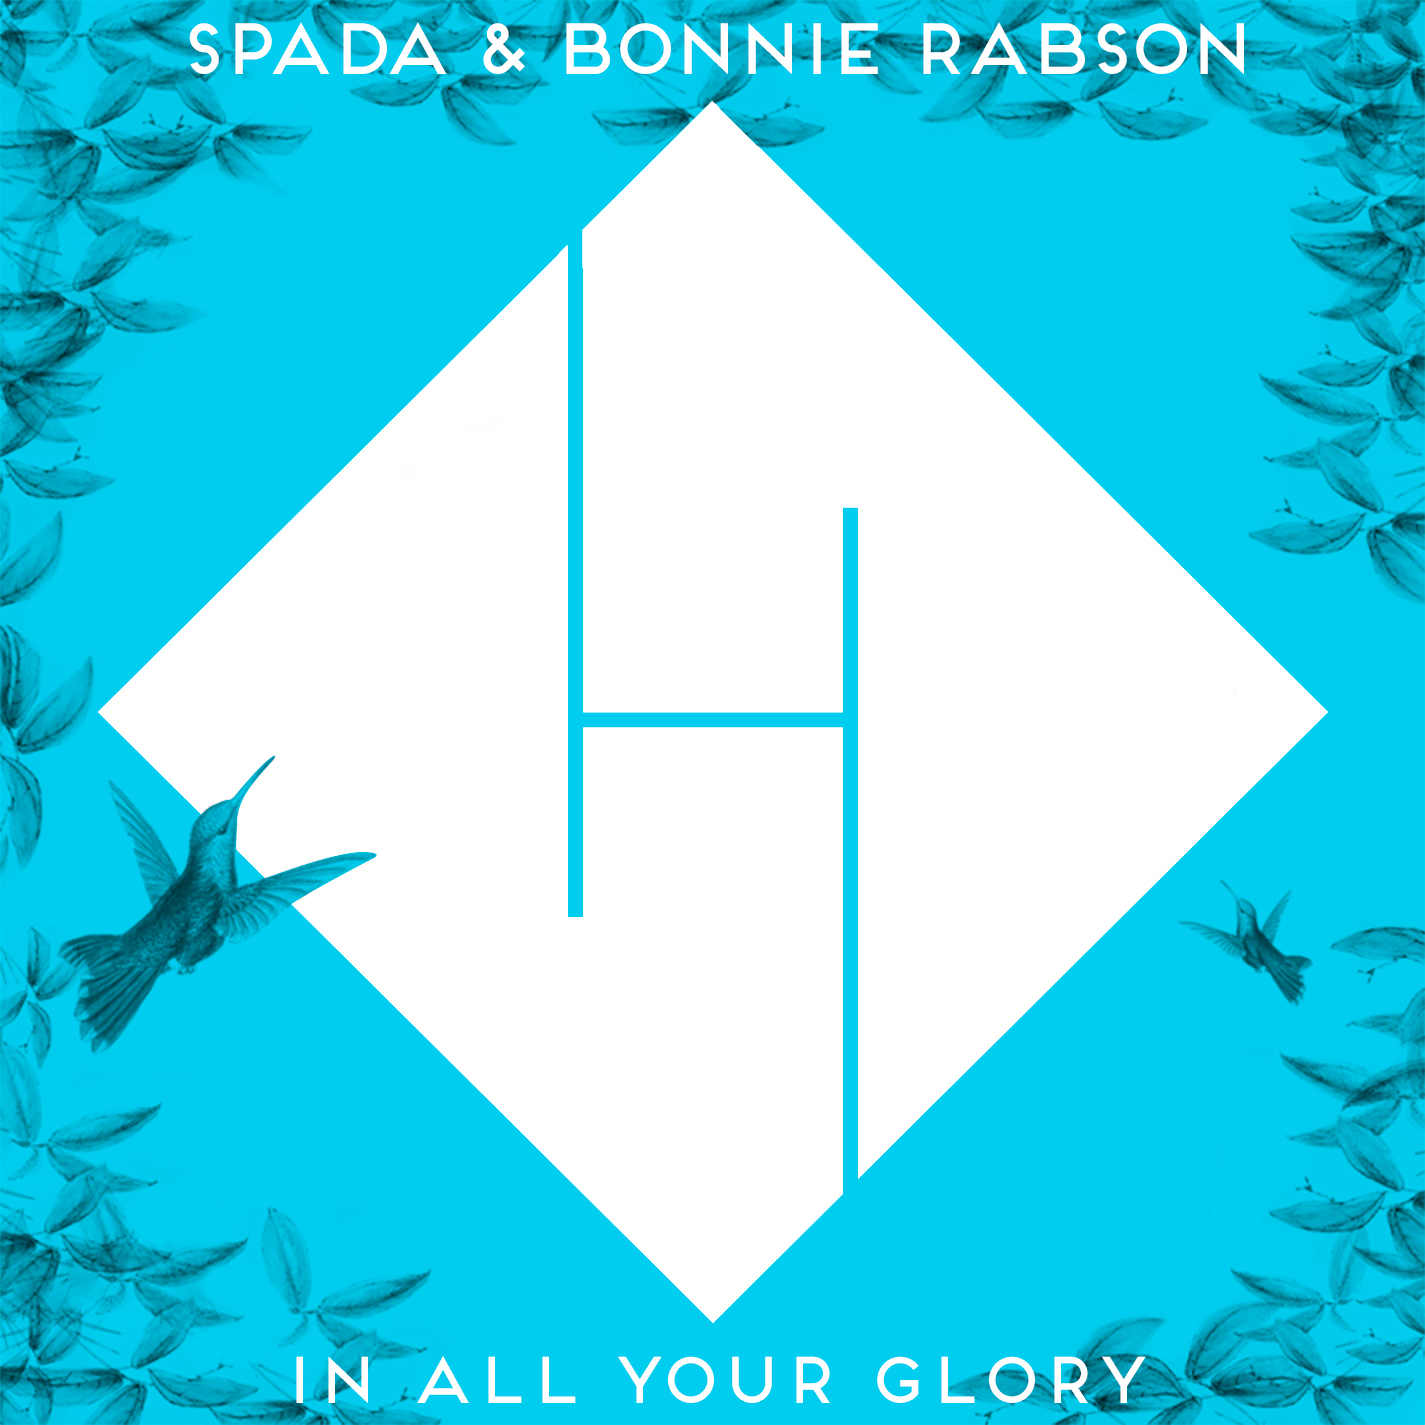 Scaricamento In All Your Glory - Spada & Bonnie Rabson (Remix Boris Brejcha) PREVIEW